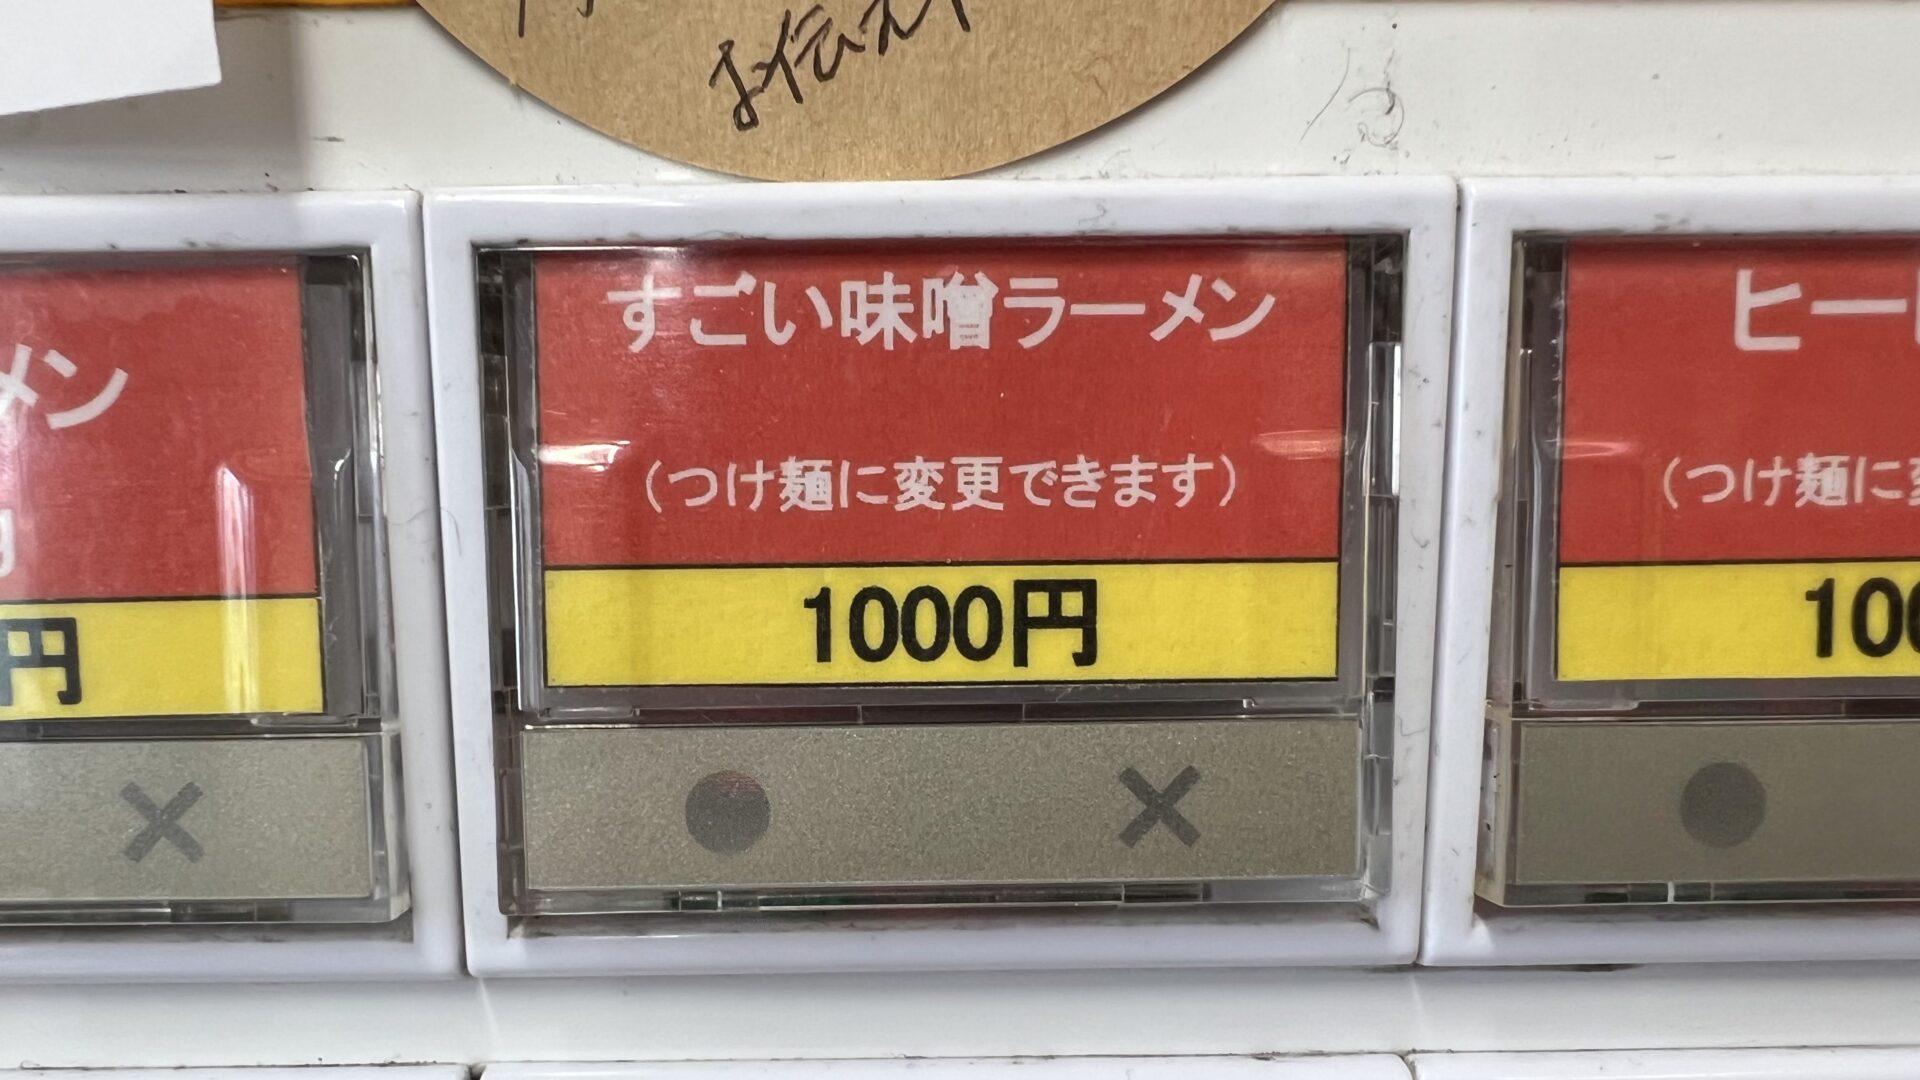 立川マシマシ足利総本店すごい味噌ラーメン券売機ボタン